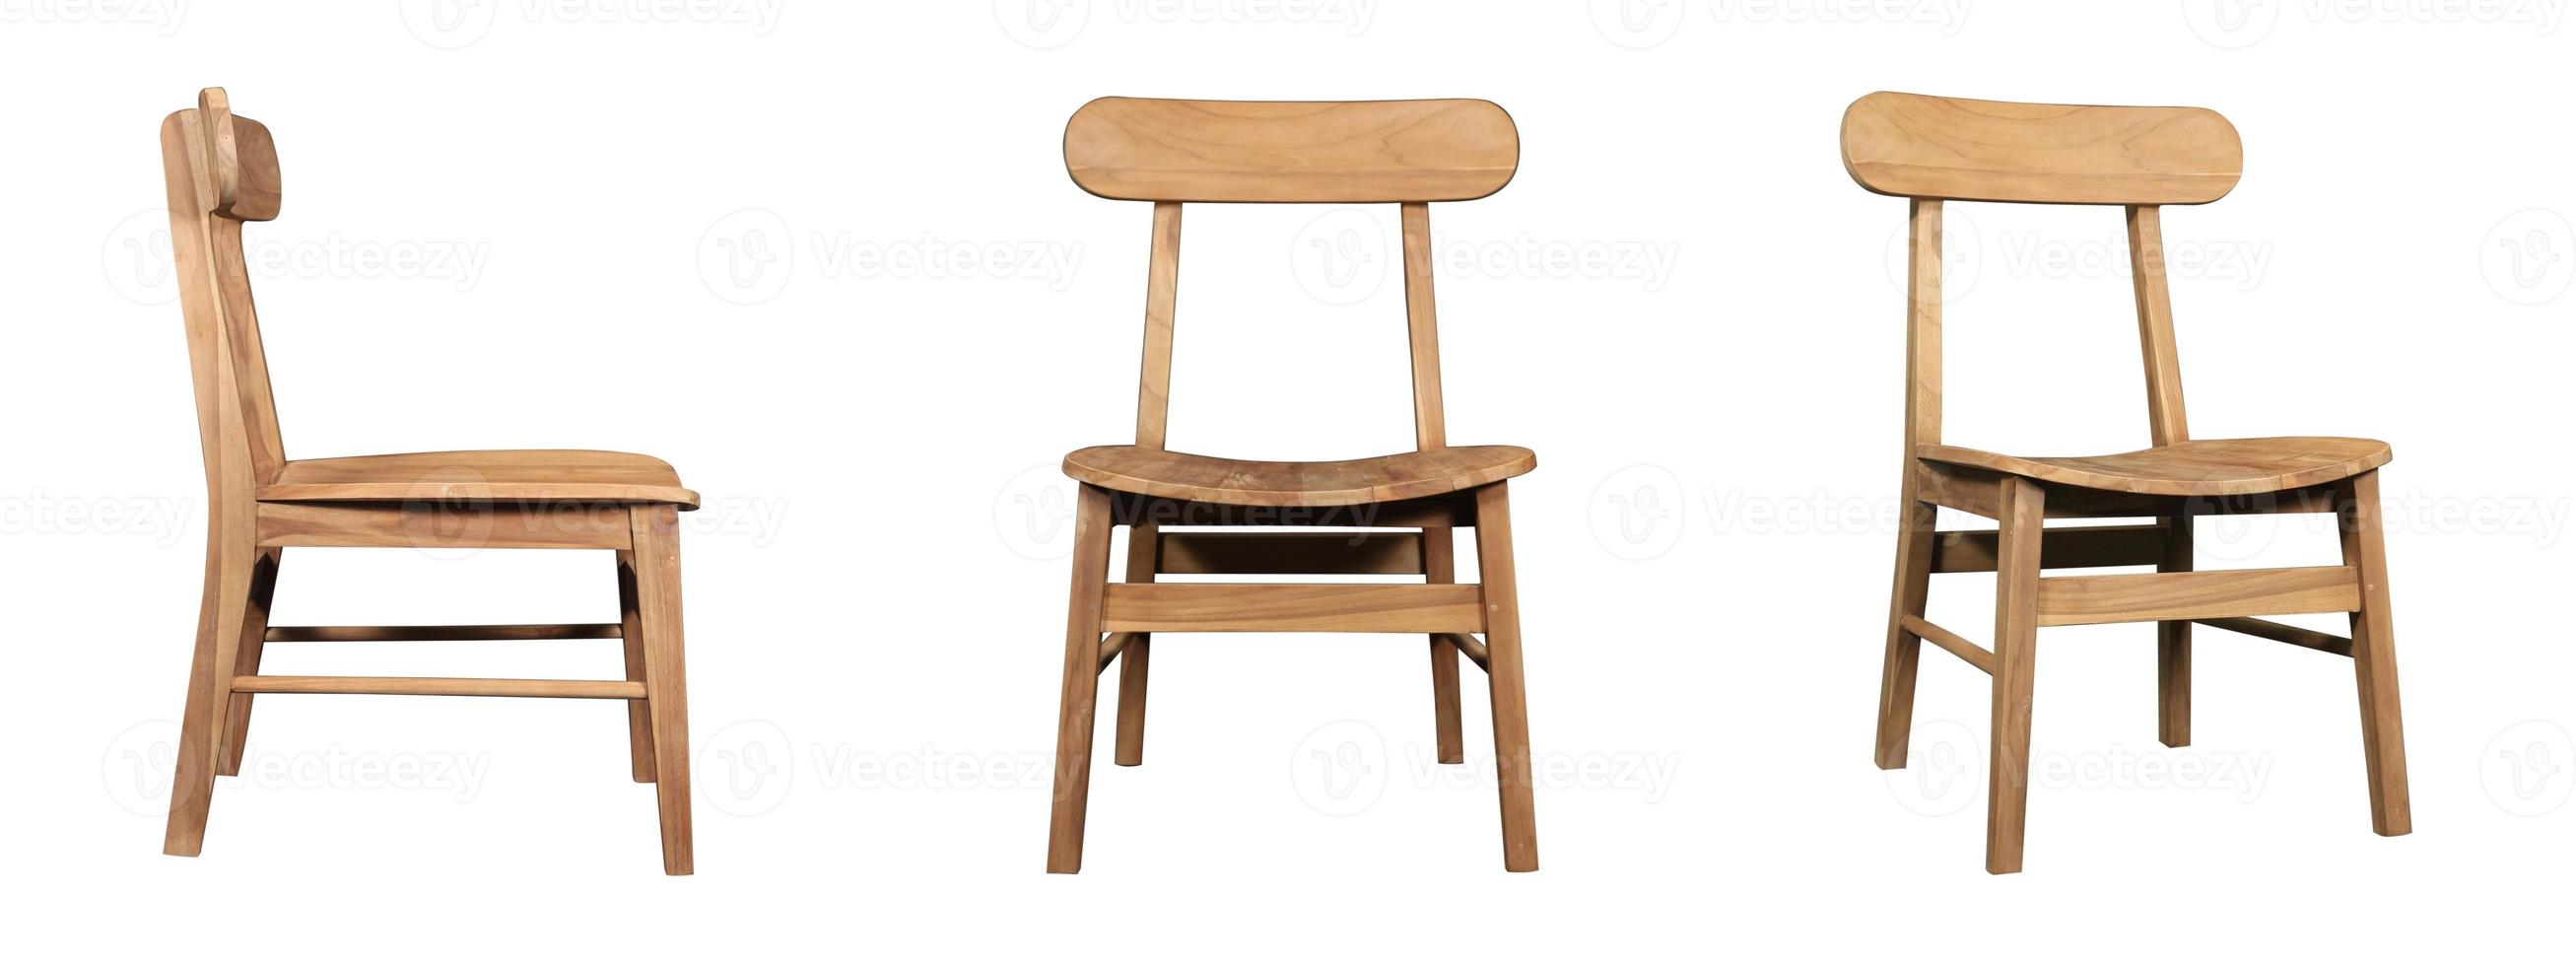 silla de madera única en diferentes ángulos aislado sobre fondo blanco. serie de muebles foto